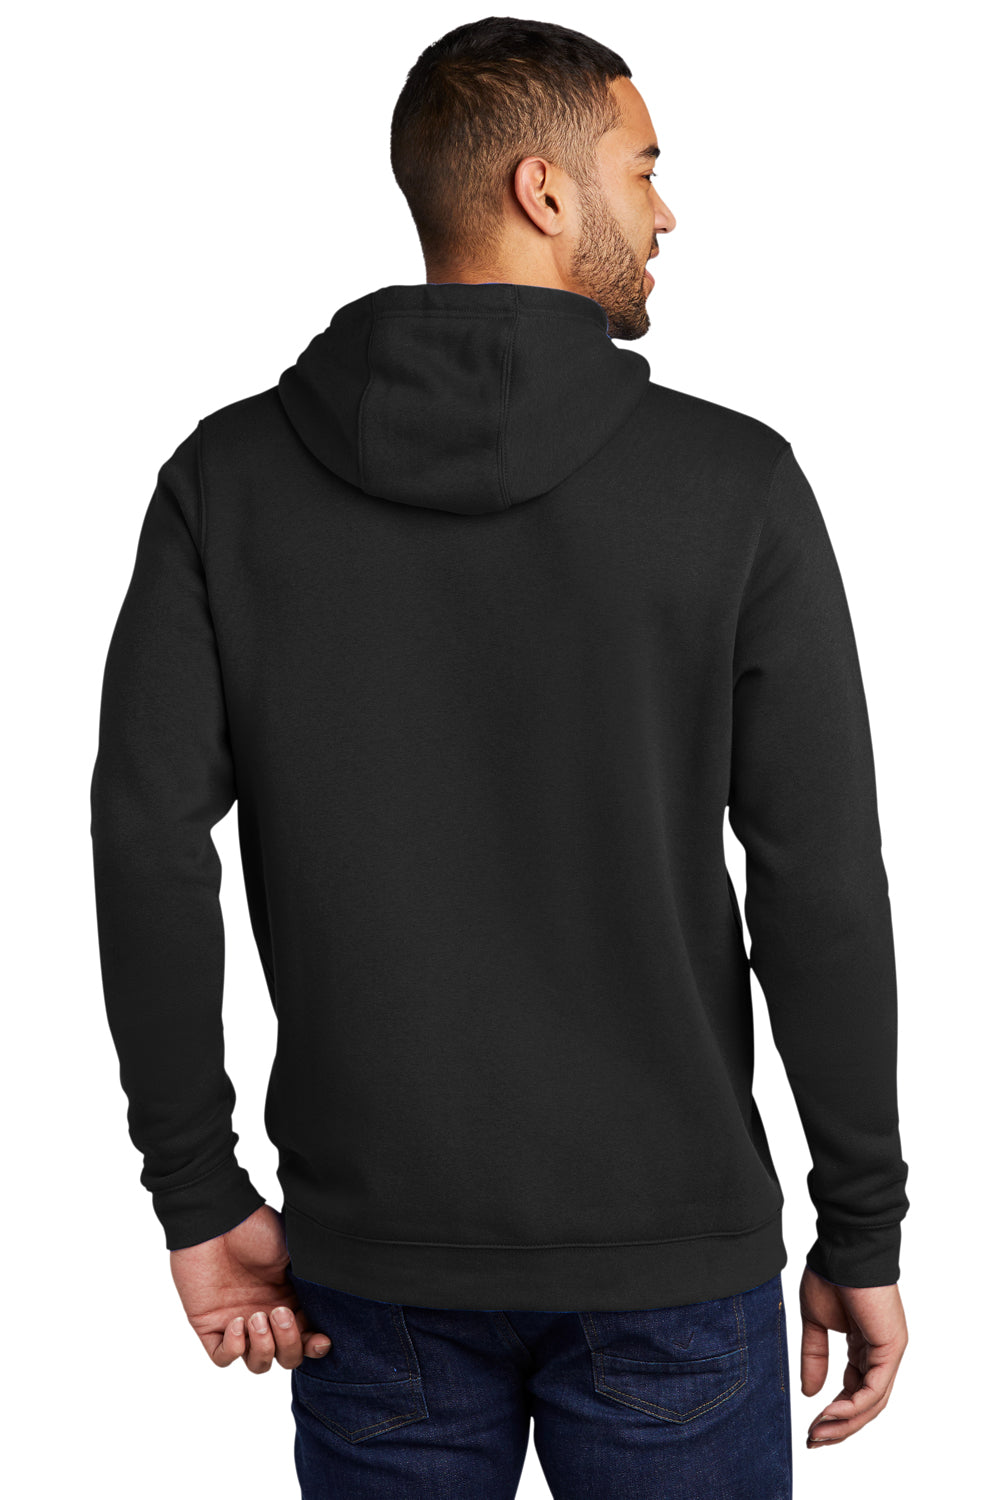 Nike CJ1611 Mens Club Fleece Hooded Sweatshirt Hoodie Black Model Back